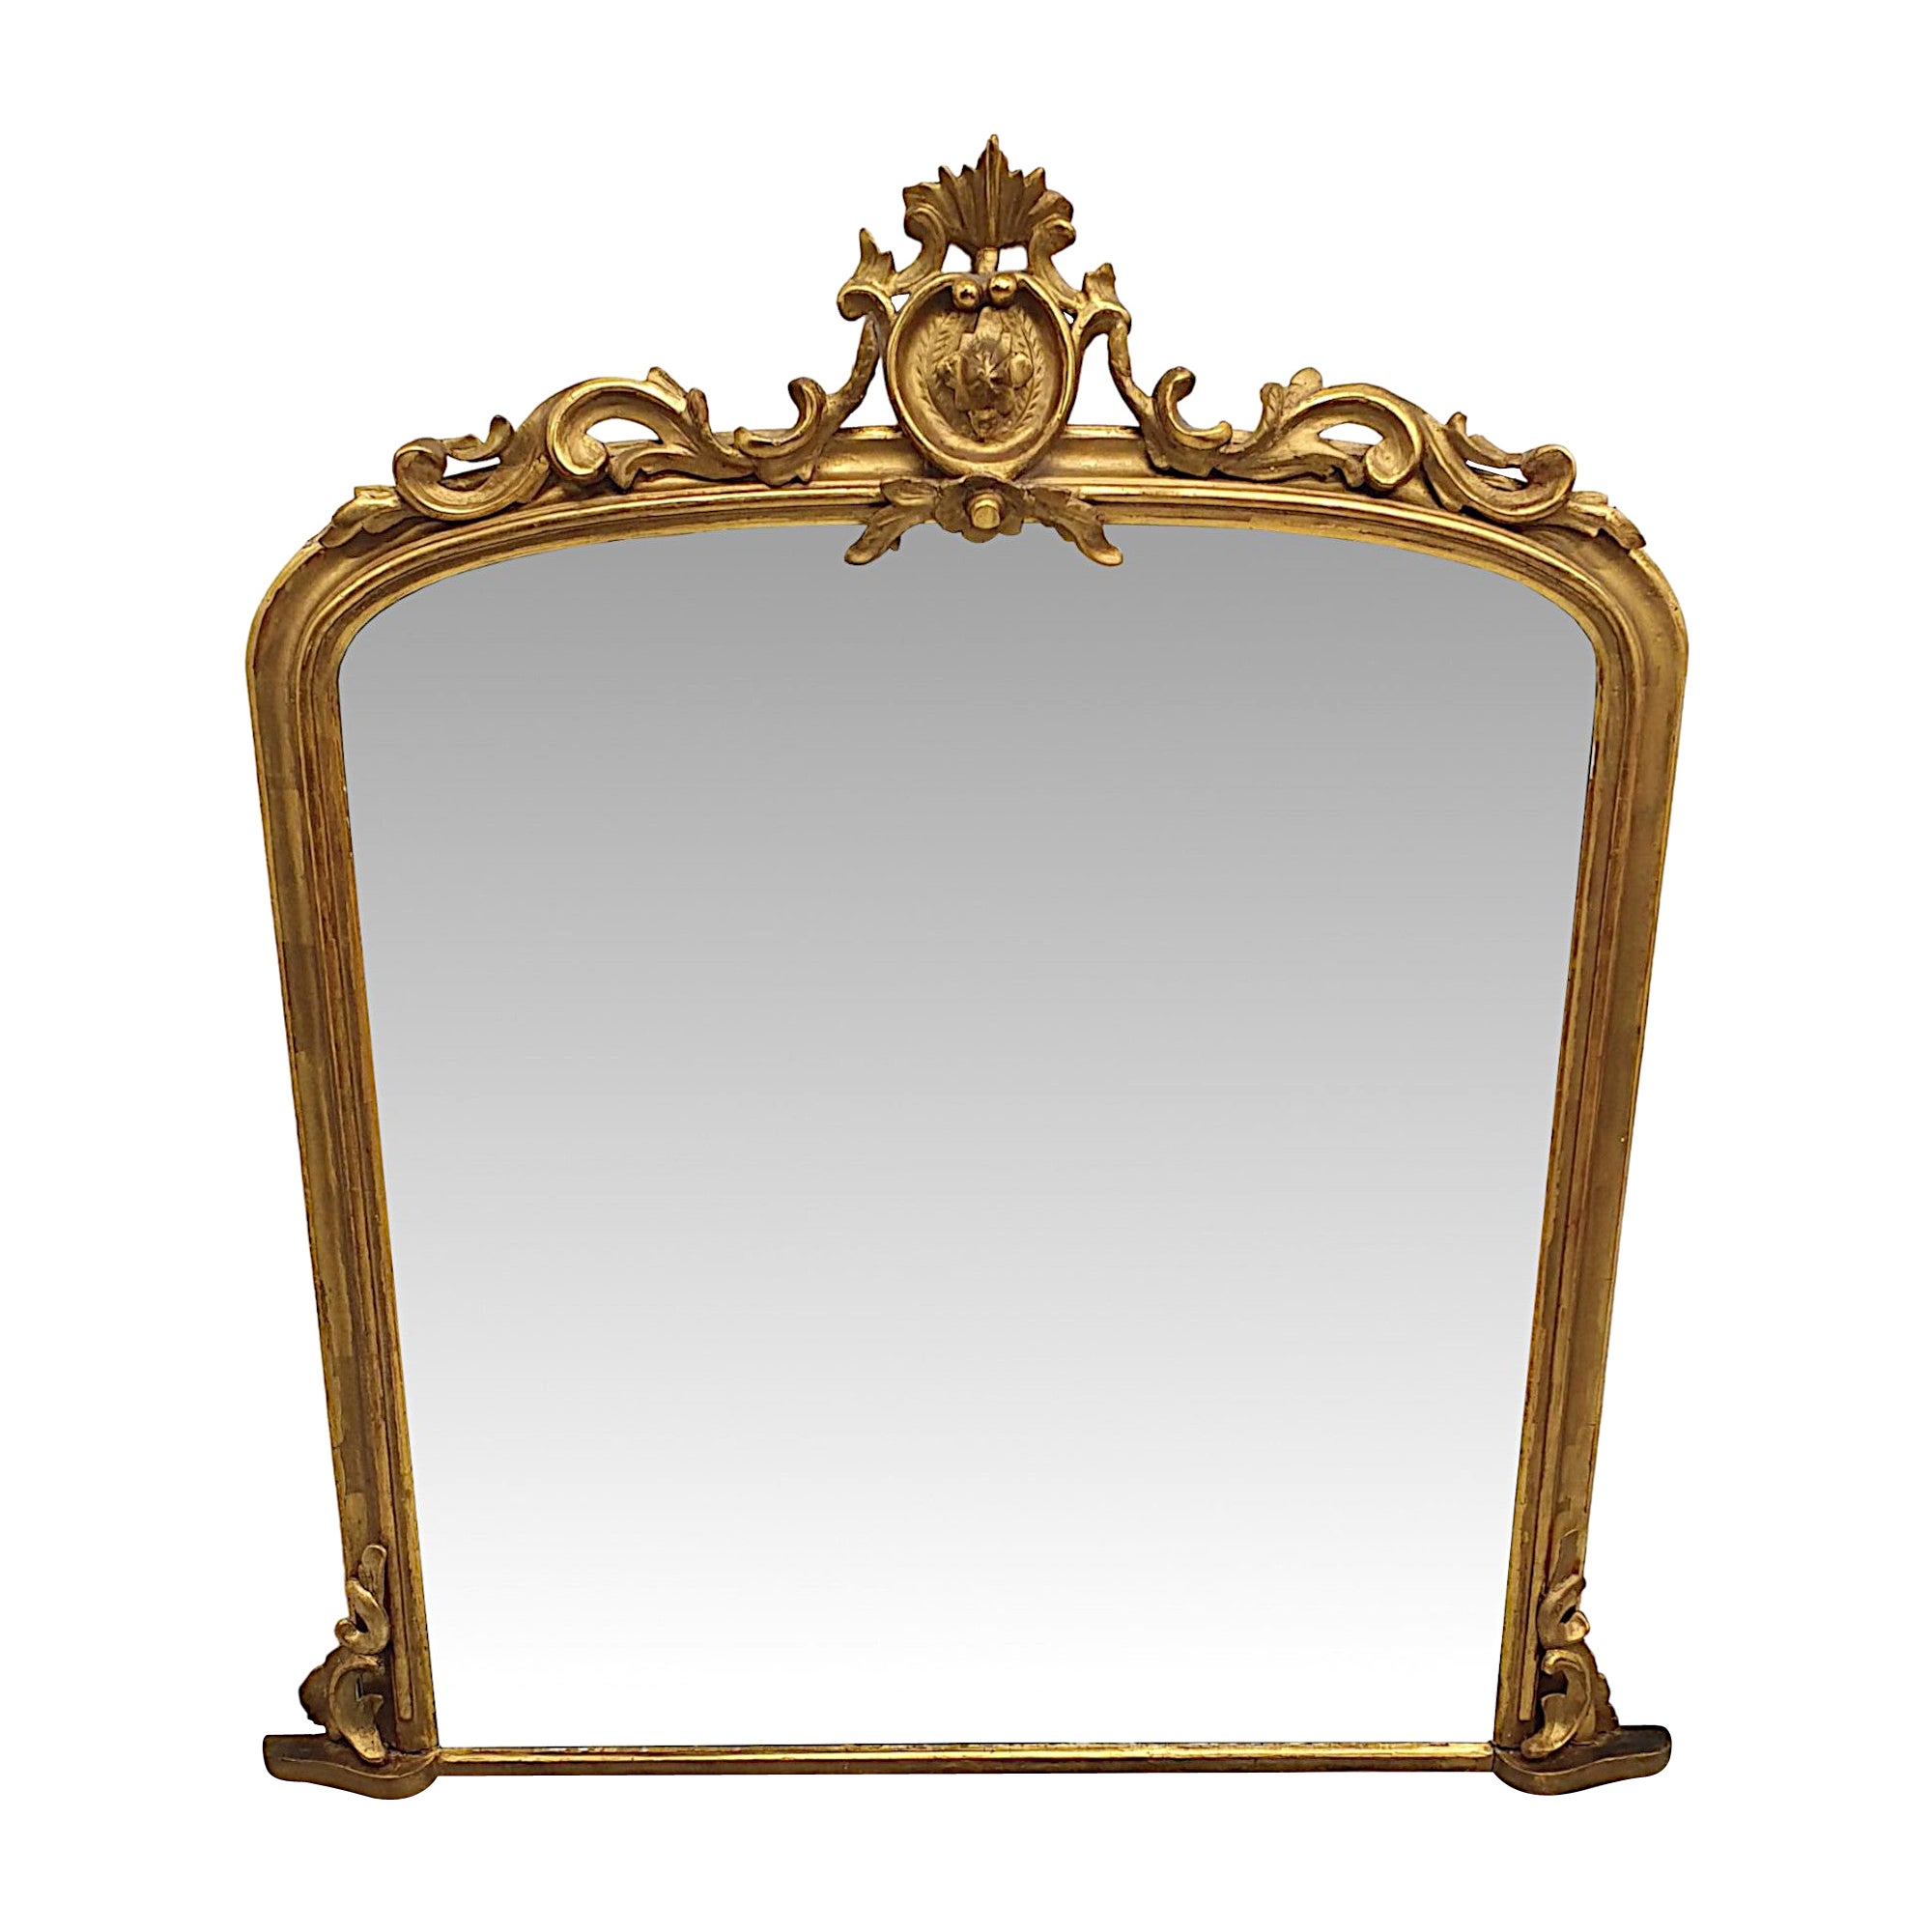 Eine fabelhafte 19. Jahrhundert Giltwood Arch Top Overmantle Spiegel